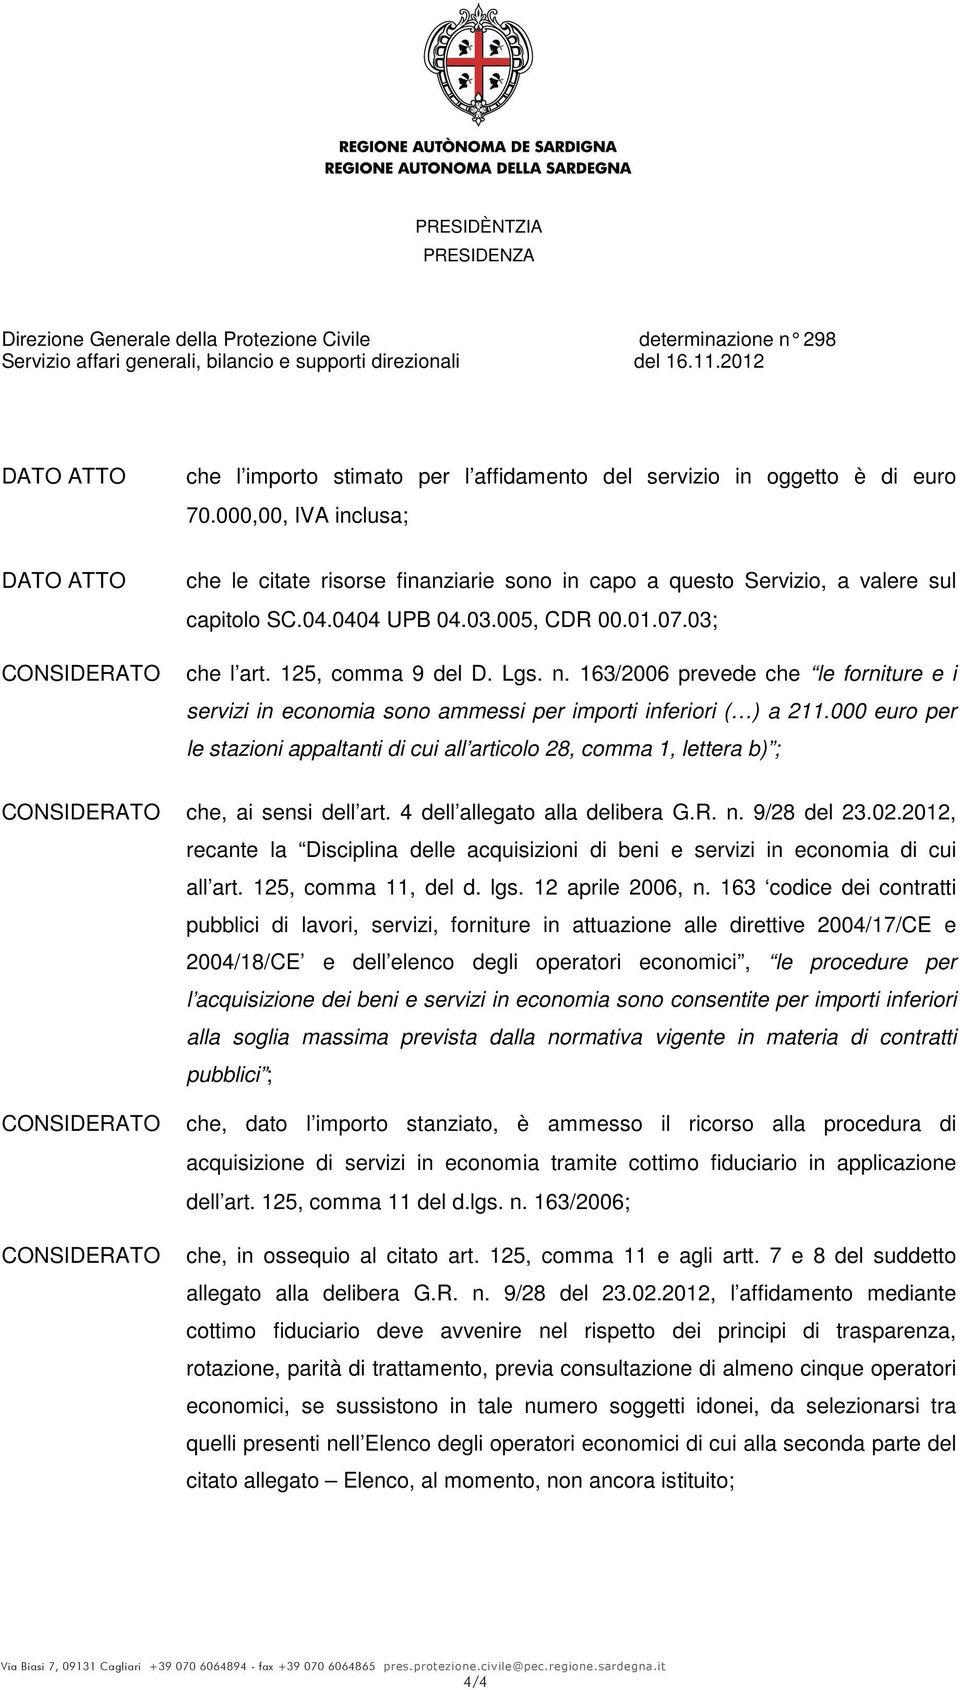 000 euro per le stazioni appaltanti di cui all articolo 28, comma 1, lettera b) ; che, ai sensi dell art. 4 dell allegato alla delibera G.R. n. 9/28 del 23.02.